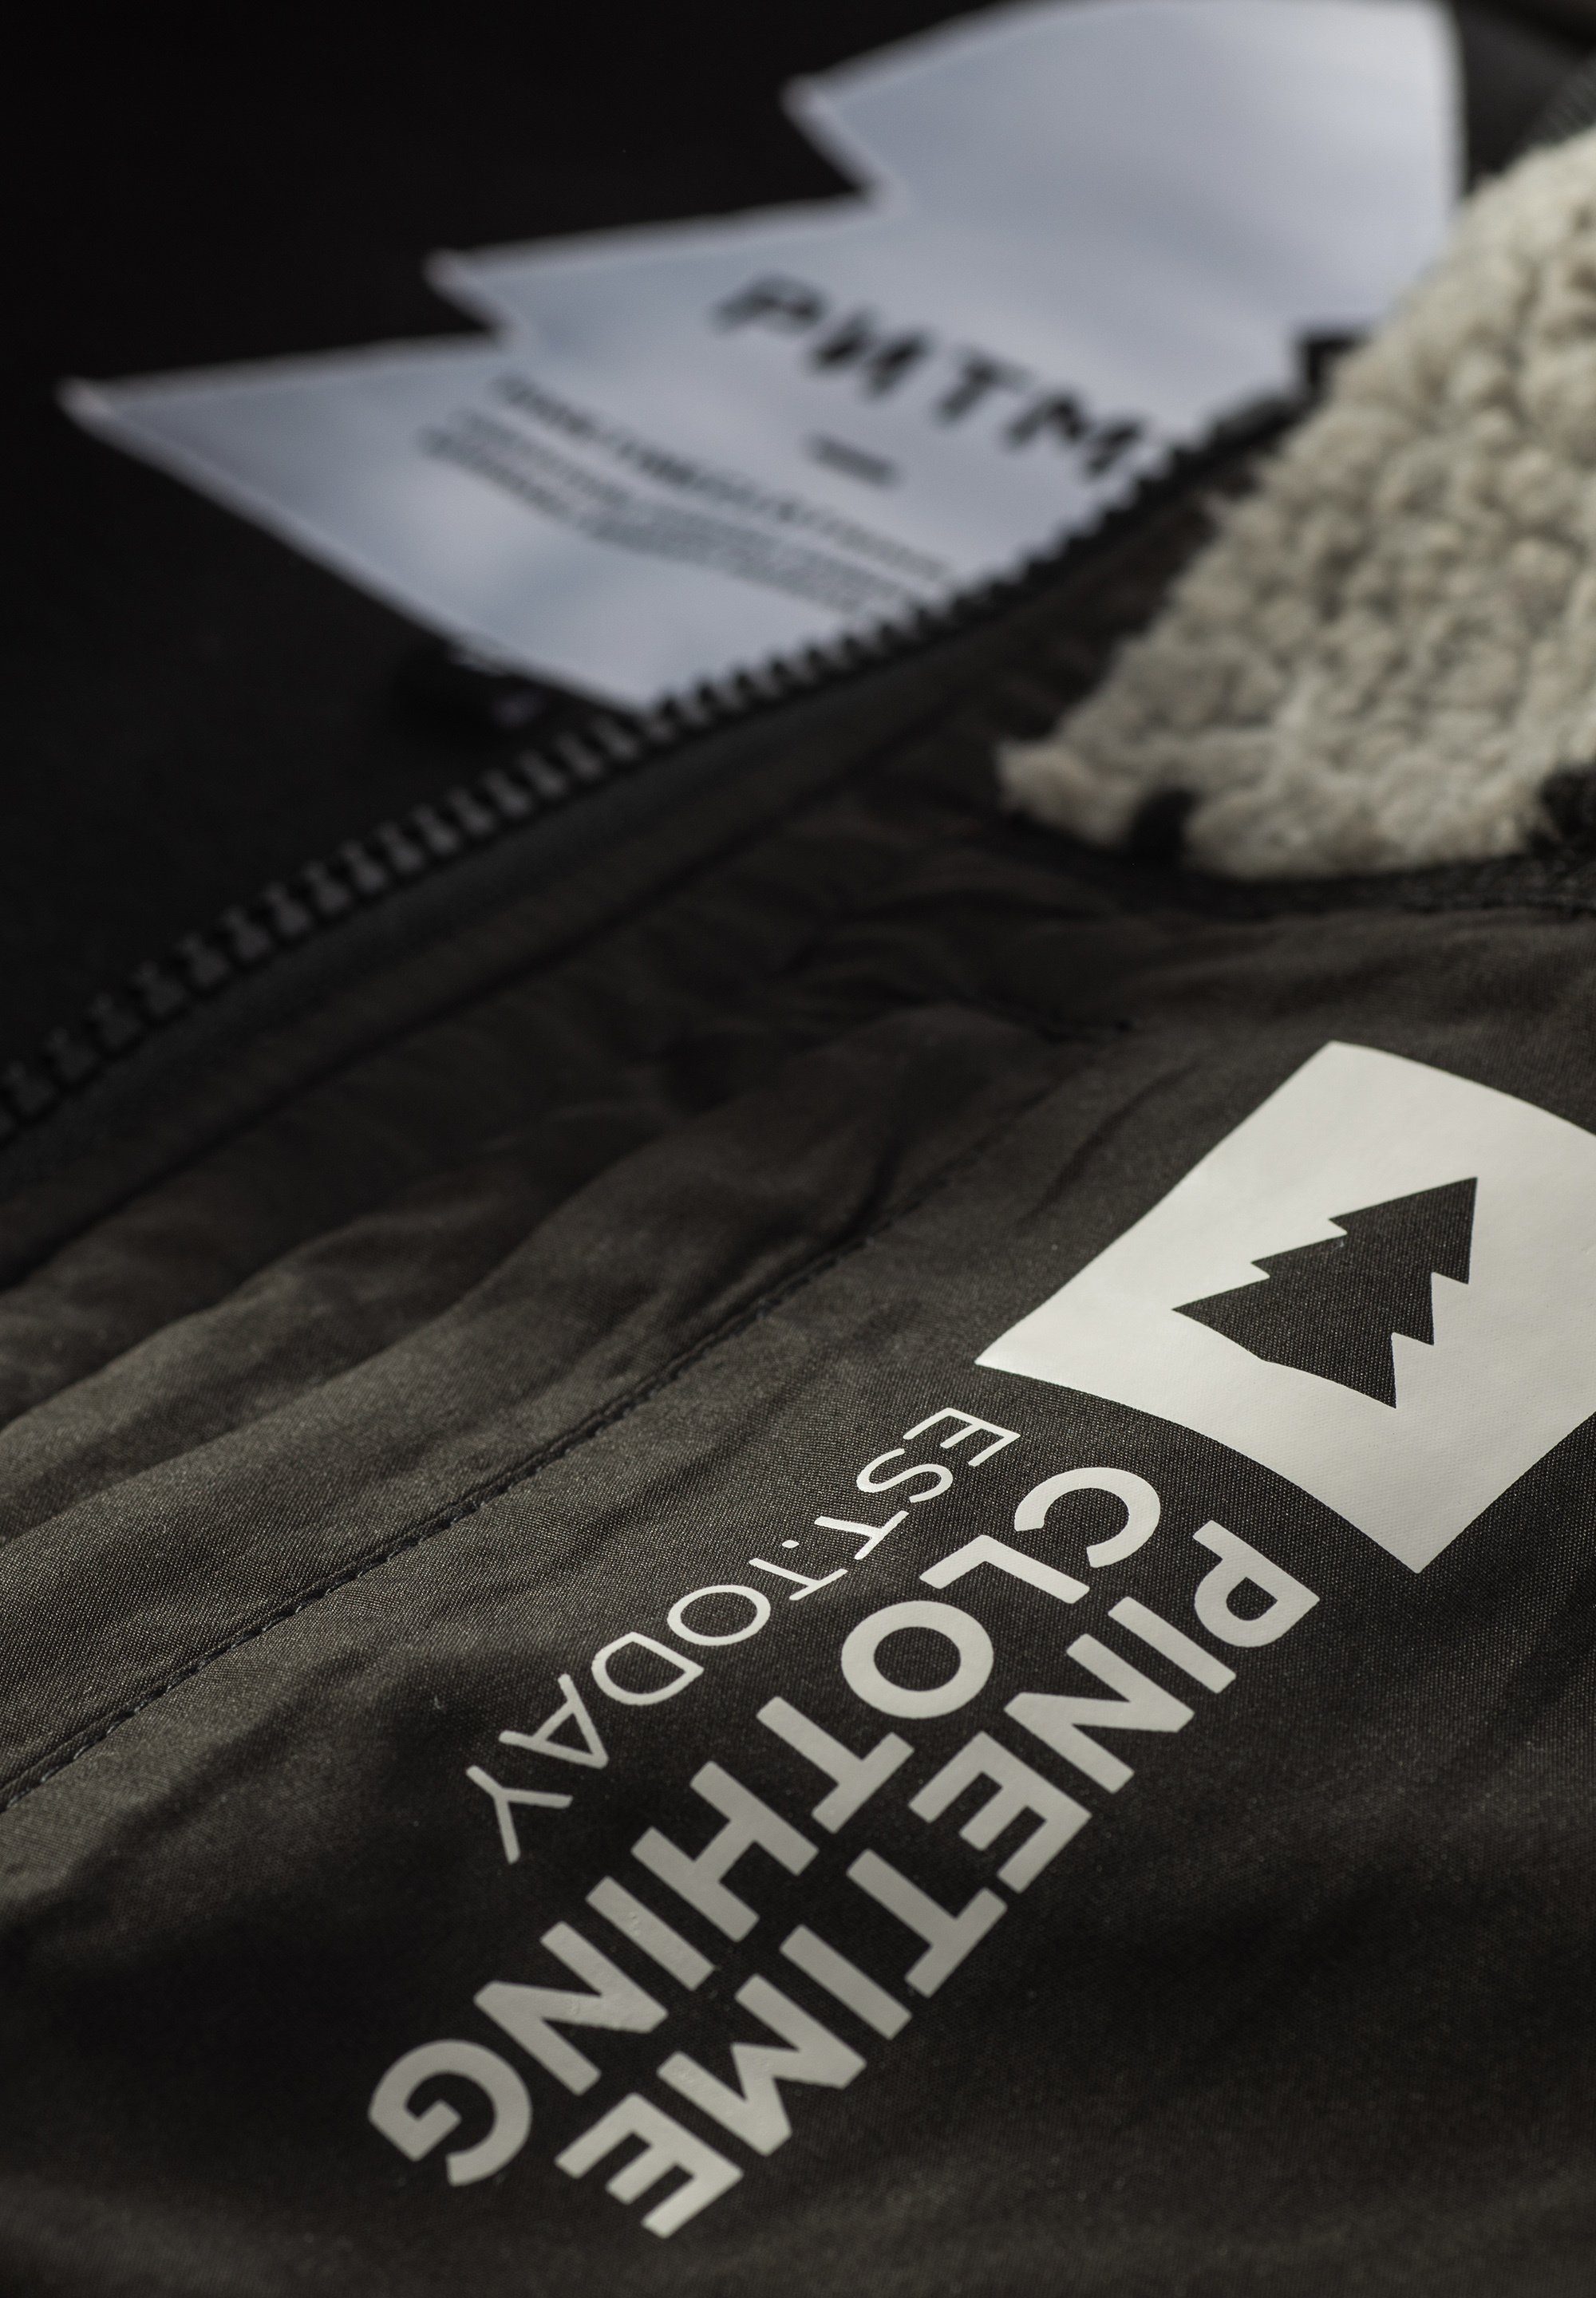 The Wärme bietet außergewöhnliche für schwarz Fleecejacke Tage Moss Clothing Sherpa-Futter Pinetime Jacket kühle